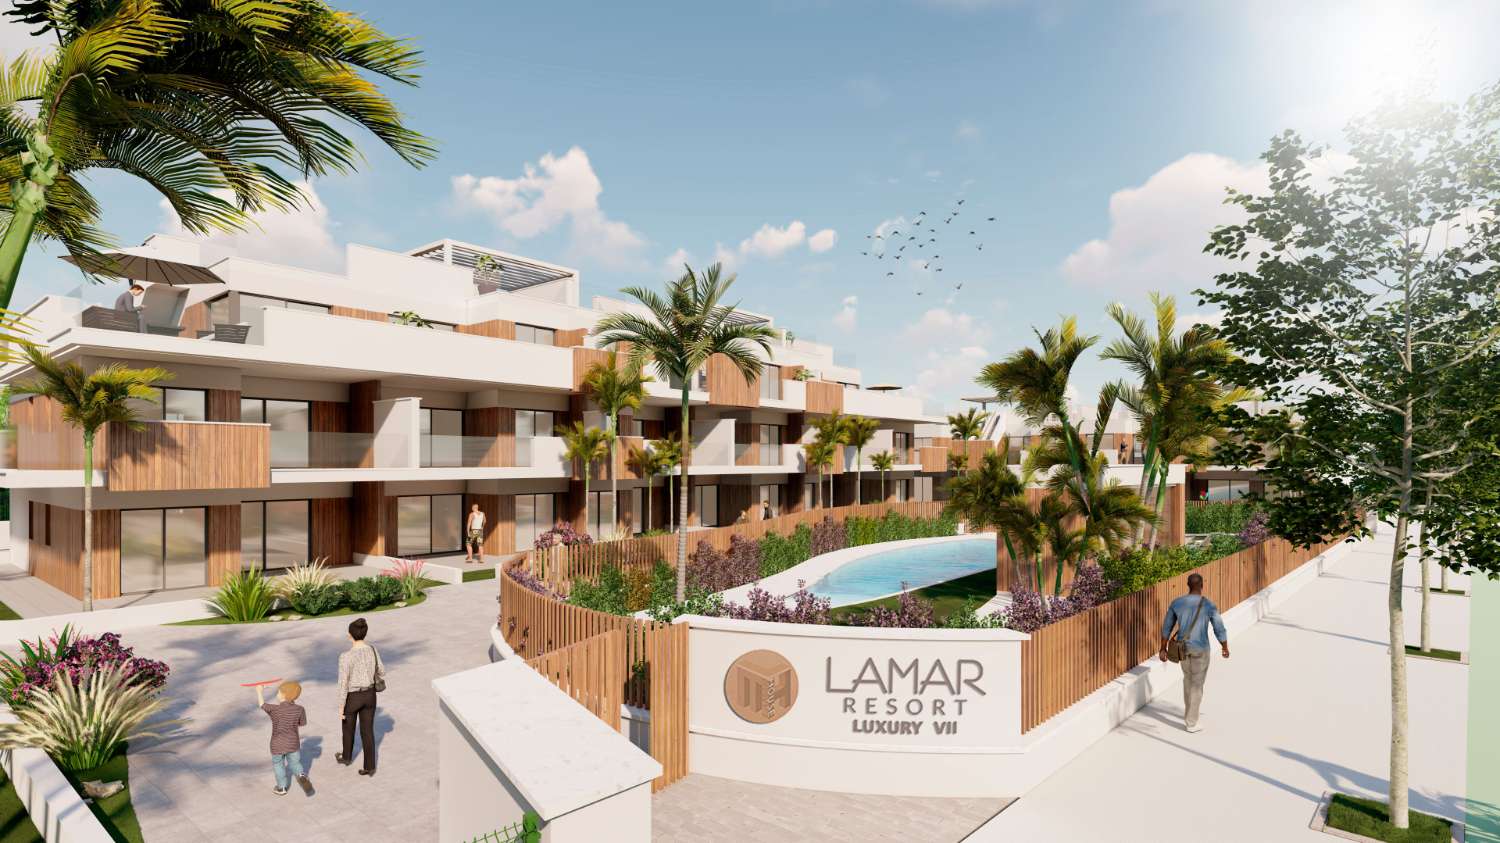 Lamar Resort Luxury VII, Pilar de la Horadada